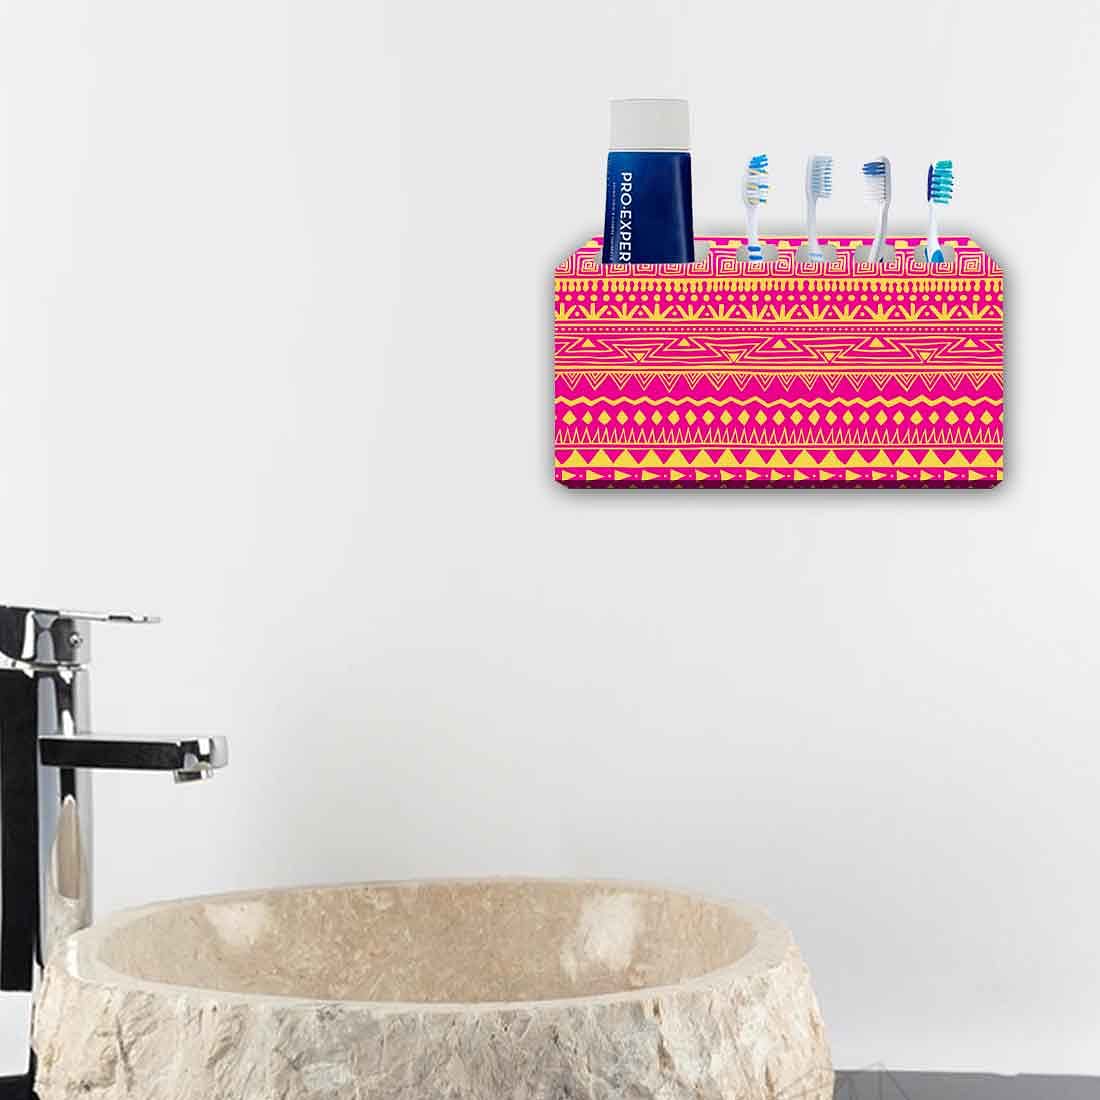 Printed Designer Toothbrush Holder for Bathroom- Aztec Pattern Pink Nutcase